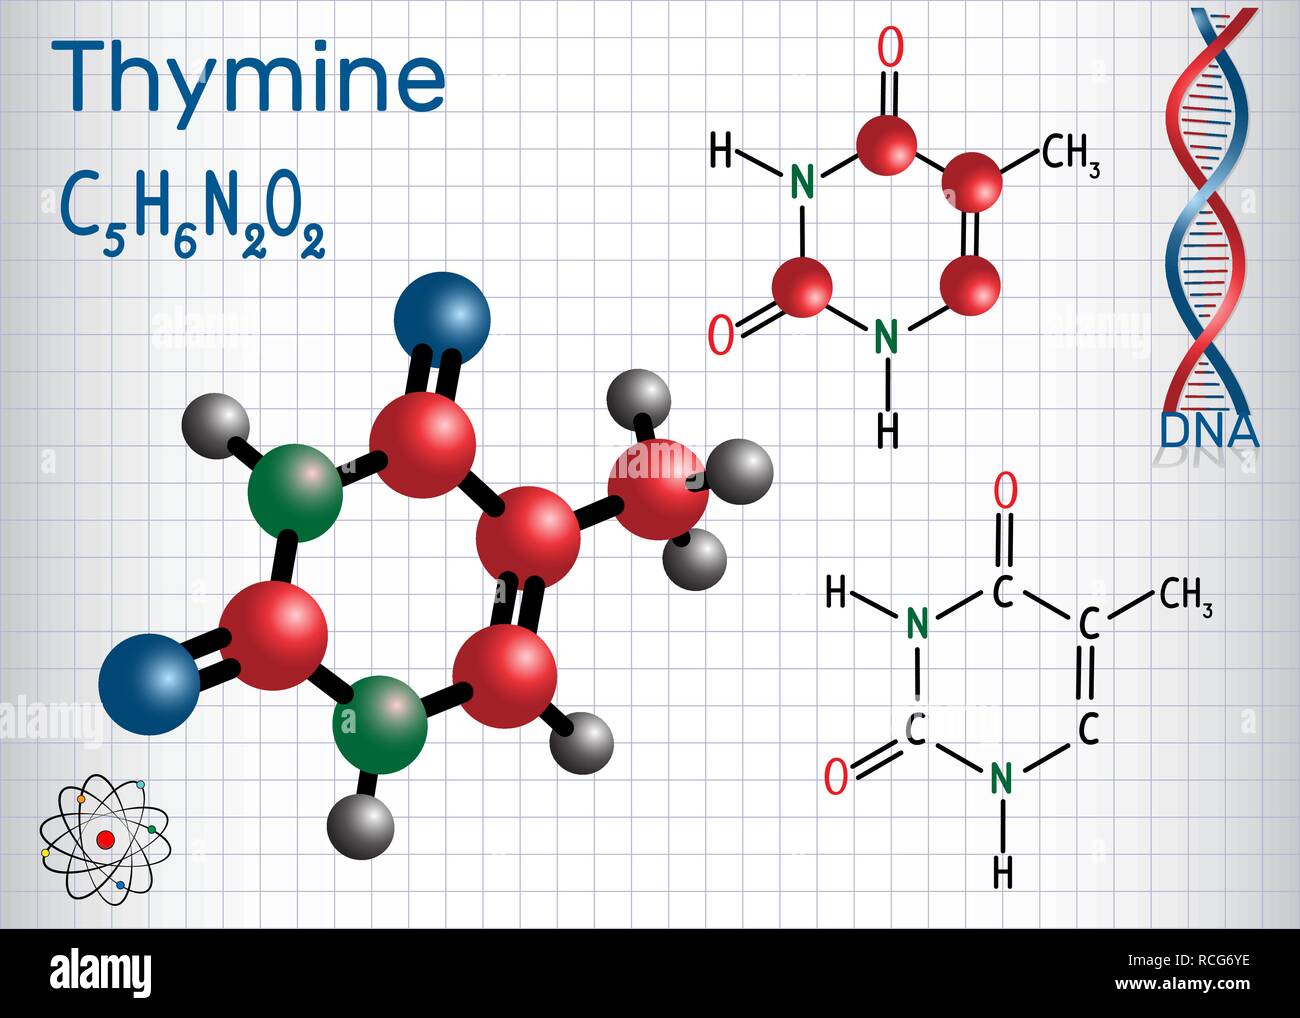 La thymine (ta) - pyrimidine nucléobase, unité fondamentale du code génétique dans l'ADN et l'ARN. Feuille de papier dans une cage. Formule chimique et structurale Illustration de Vecteur